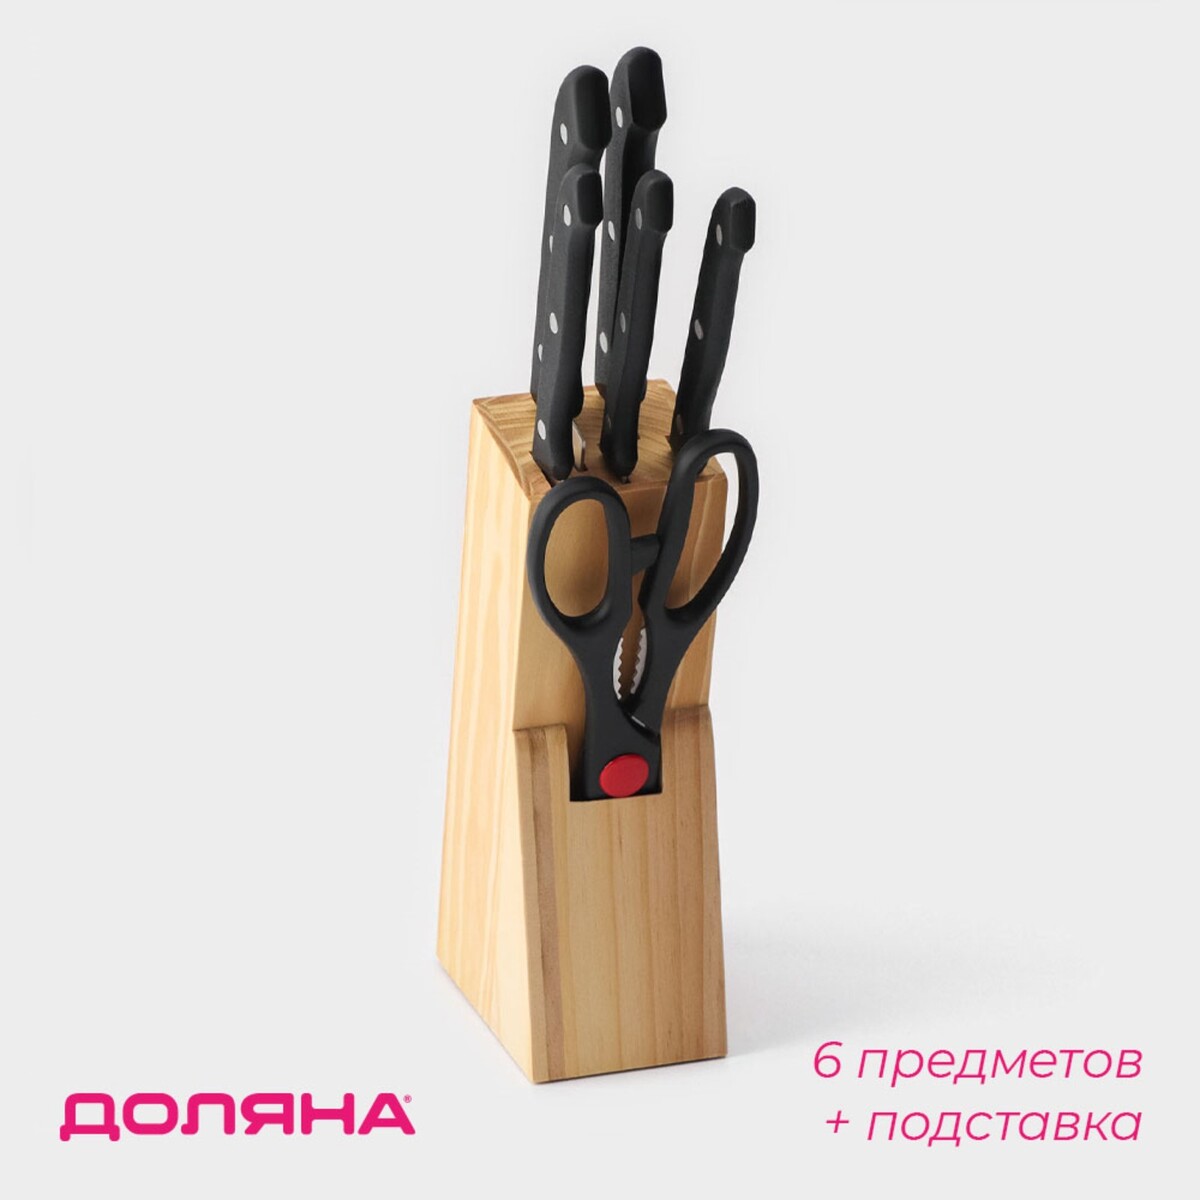 Набор ножей кухонных на подставке доляна, 6 предметов: ножи 8 см, 11 см, 13 см, 19 см, 20 см, ножницы, цвет черный набор ножей lenardi на подставке 13 предметов